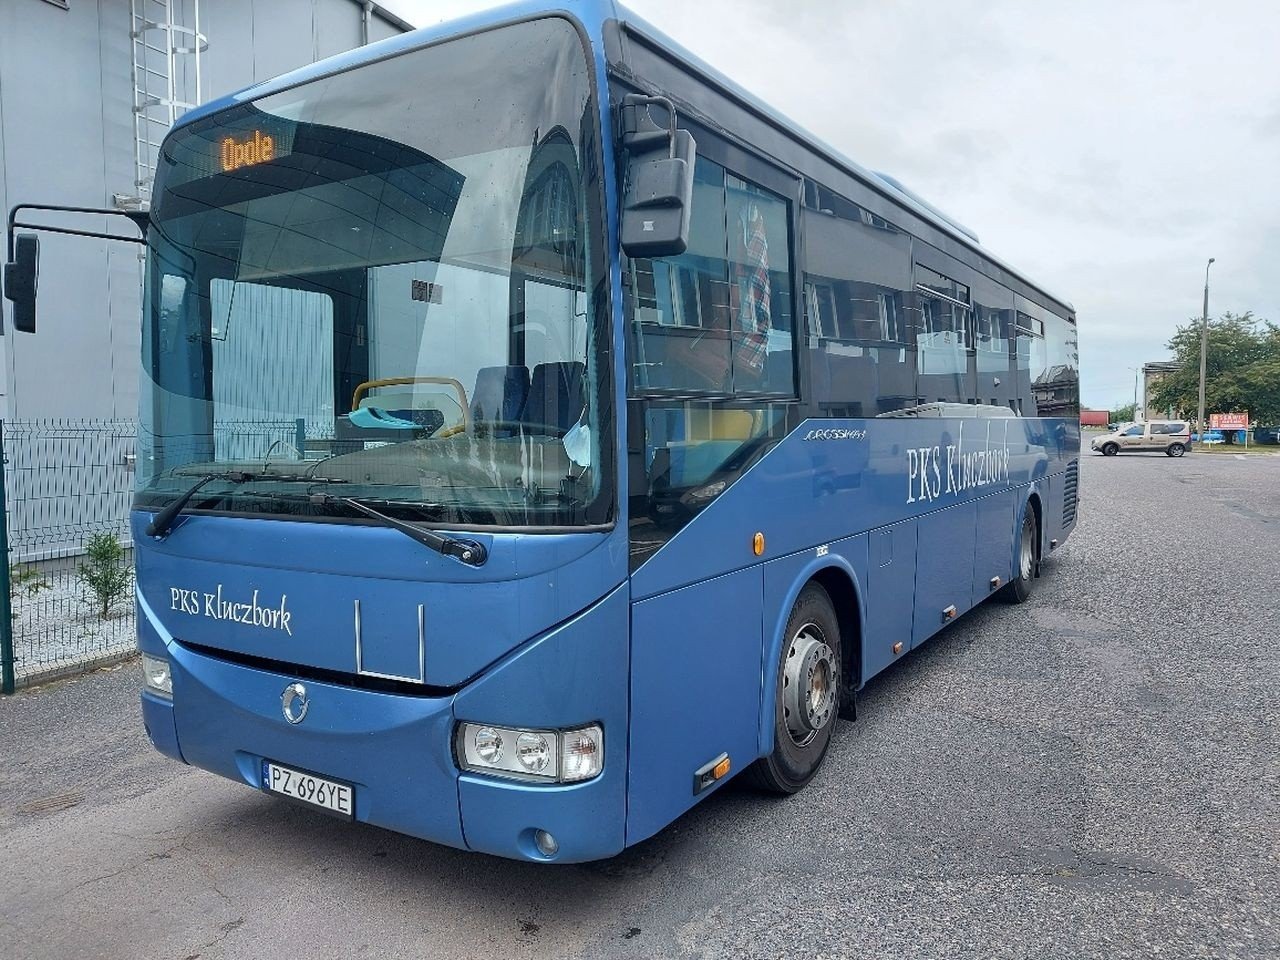 PKS Kluczbork kupił 10 autobusów. To nie koniec zakupów [zdjęcia] | Nowa  Trybuna Opolska